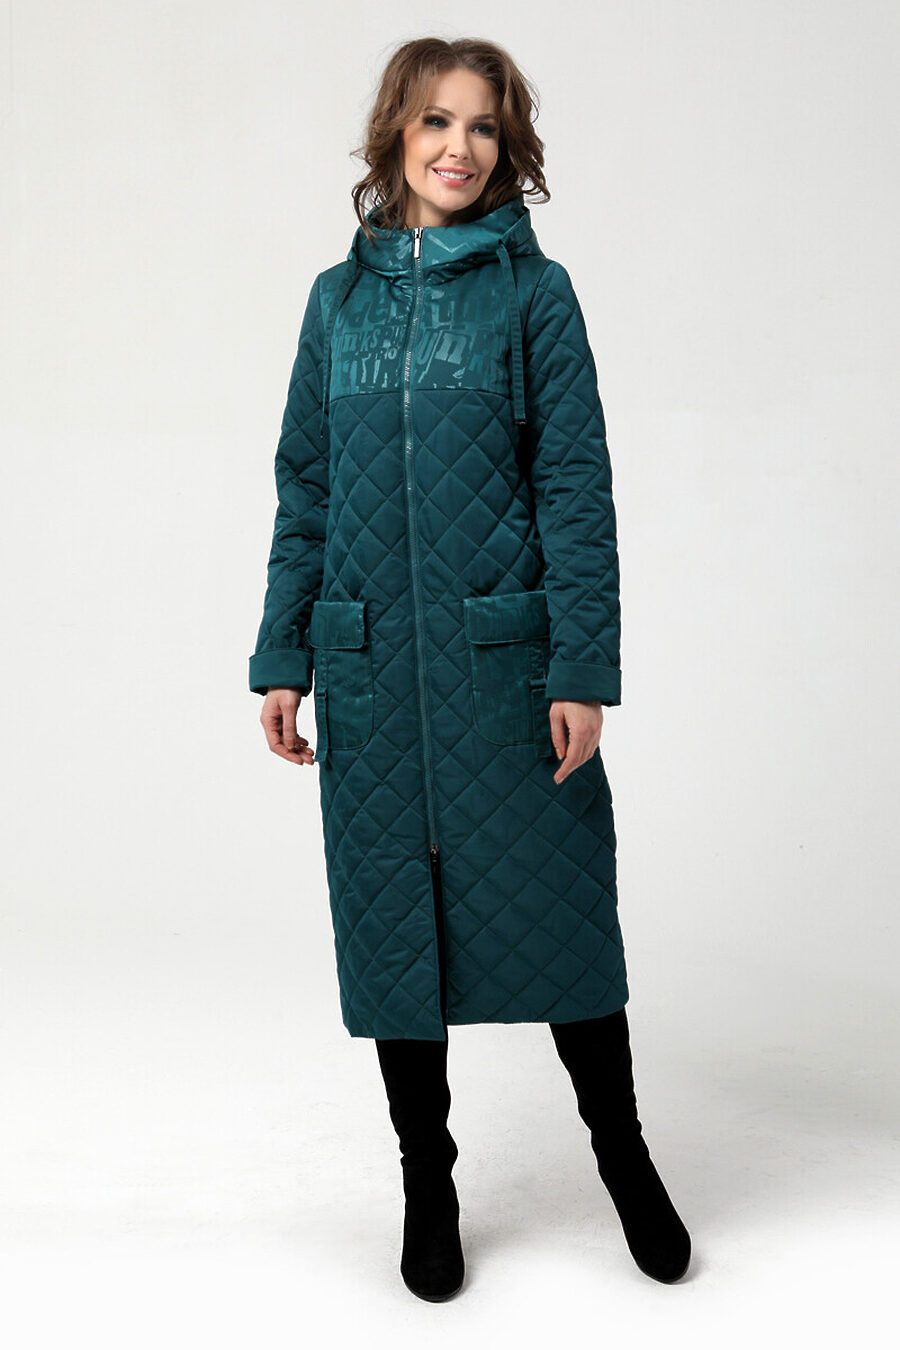 Пальто DIWAY (684810), купить в Moyo.moda